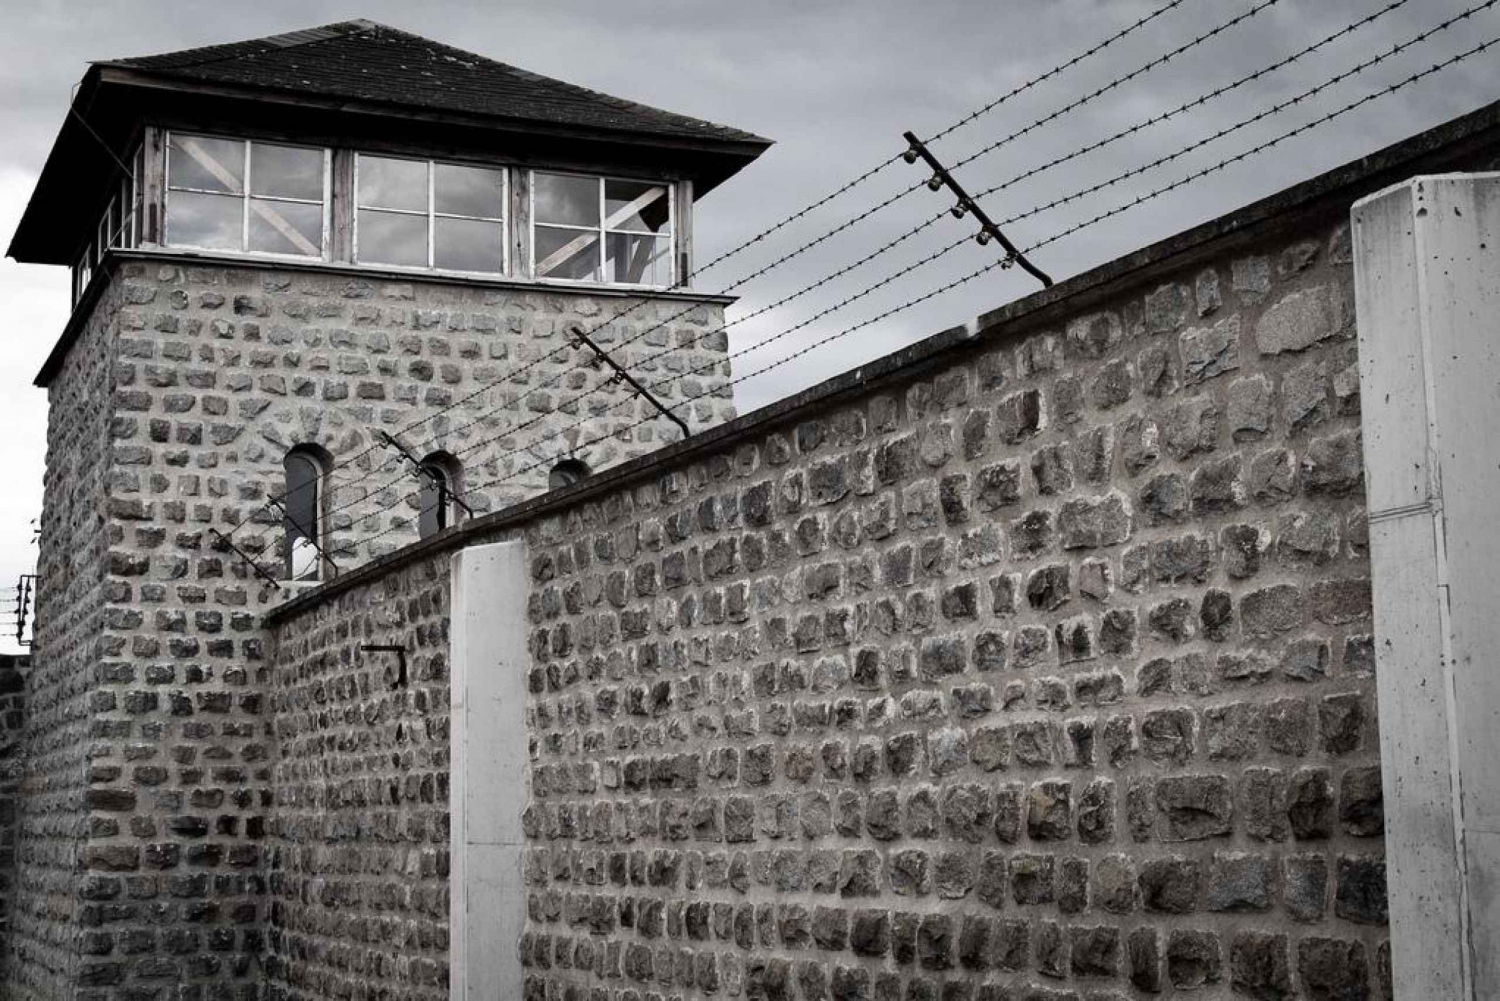 Wien: Dagstur til mindesmærket for koncentrationslejren Mauthausen